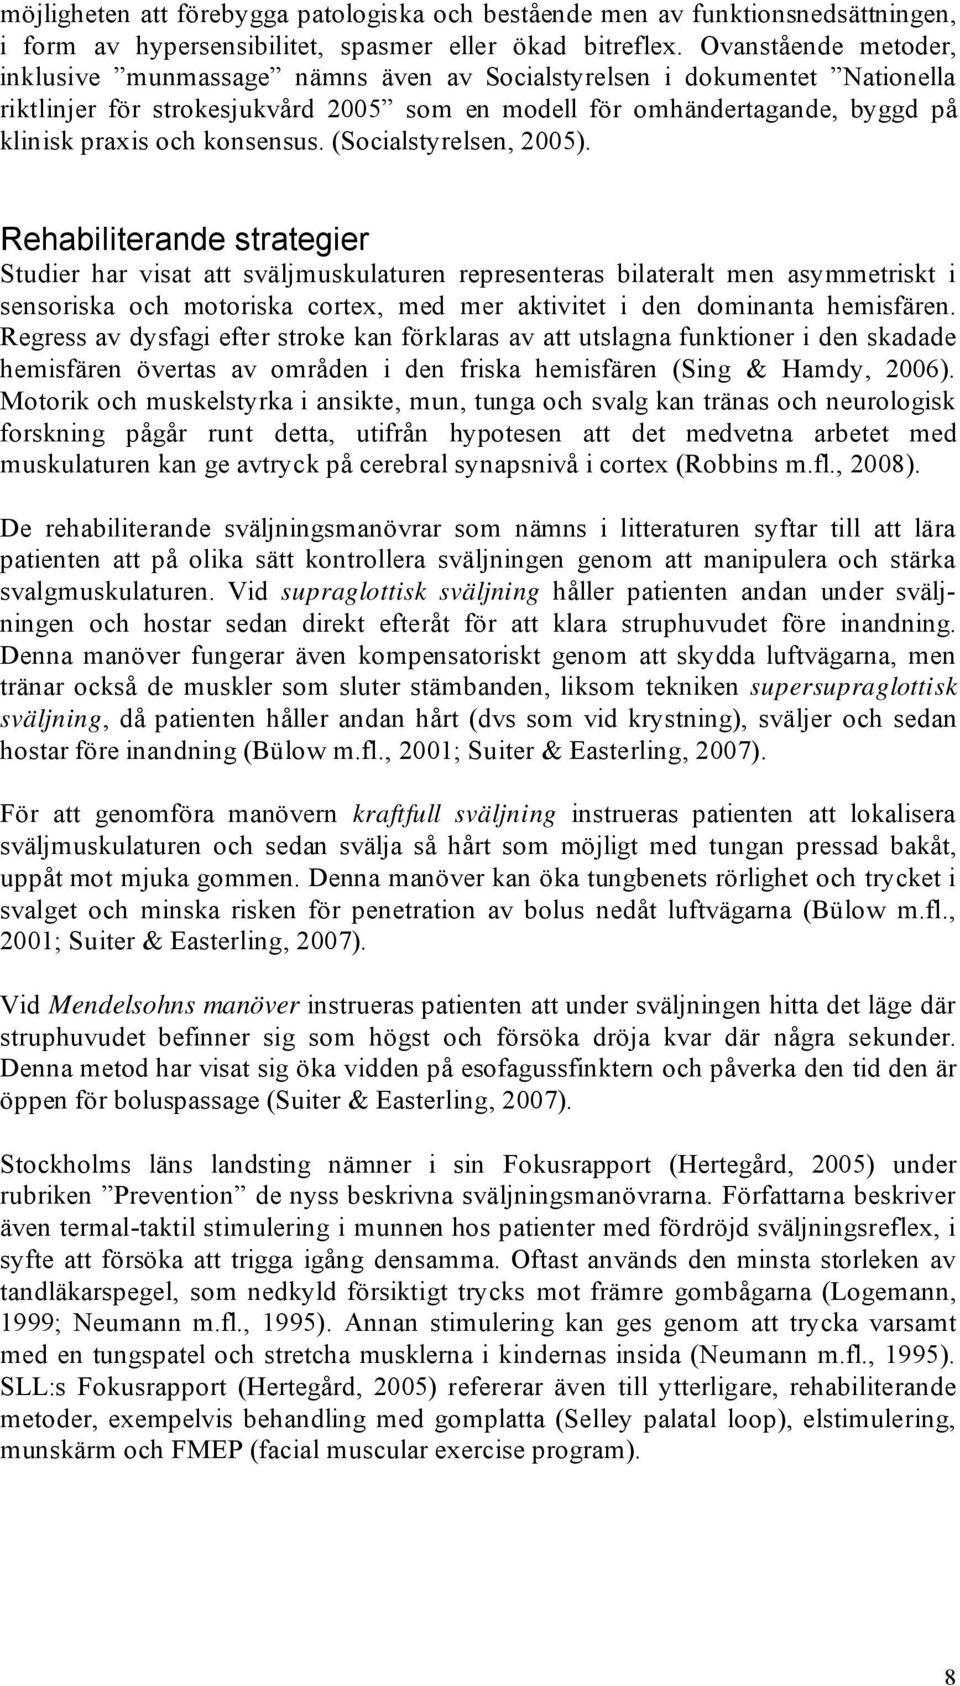 konsensus. (Socialstyrelsen, 2005).